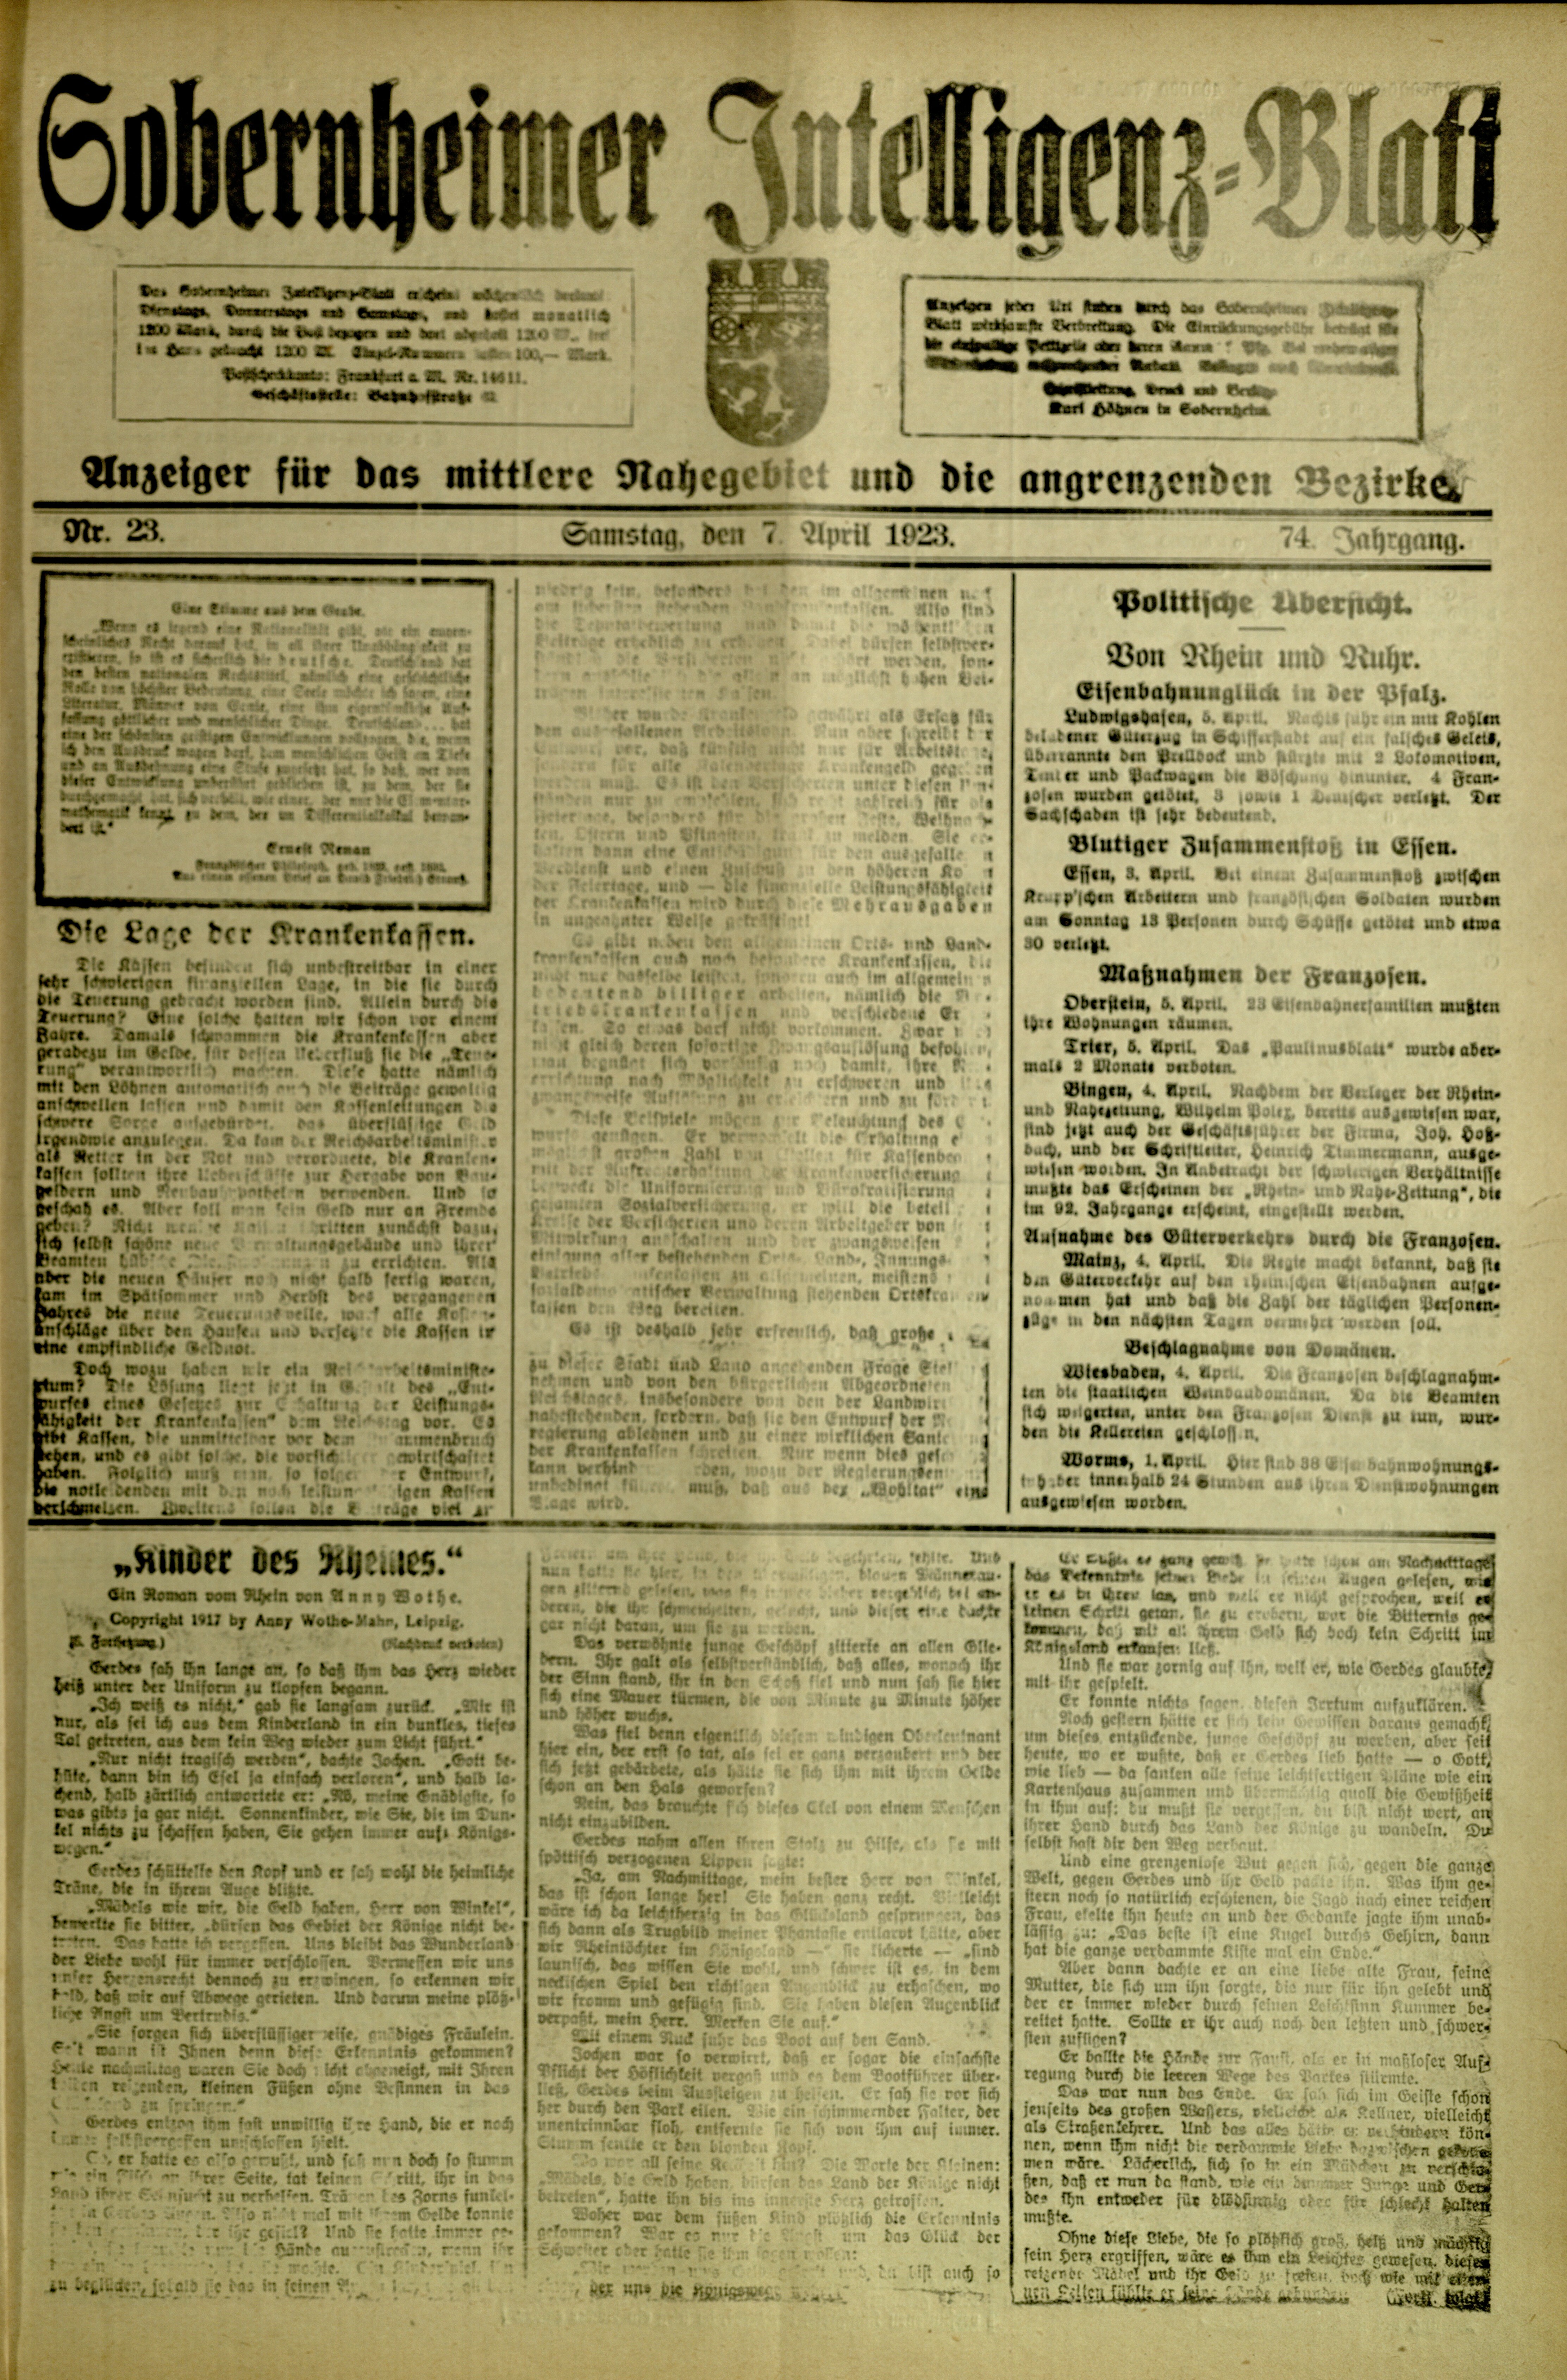 Zeitung: Sobernheimer Intelligenzblatt; April 1923, Jg. 73 Nr. 23 (Heimatmuseum Bad Sobernheim CC BY-NC-SA)